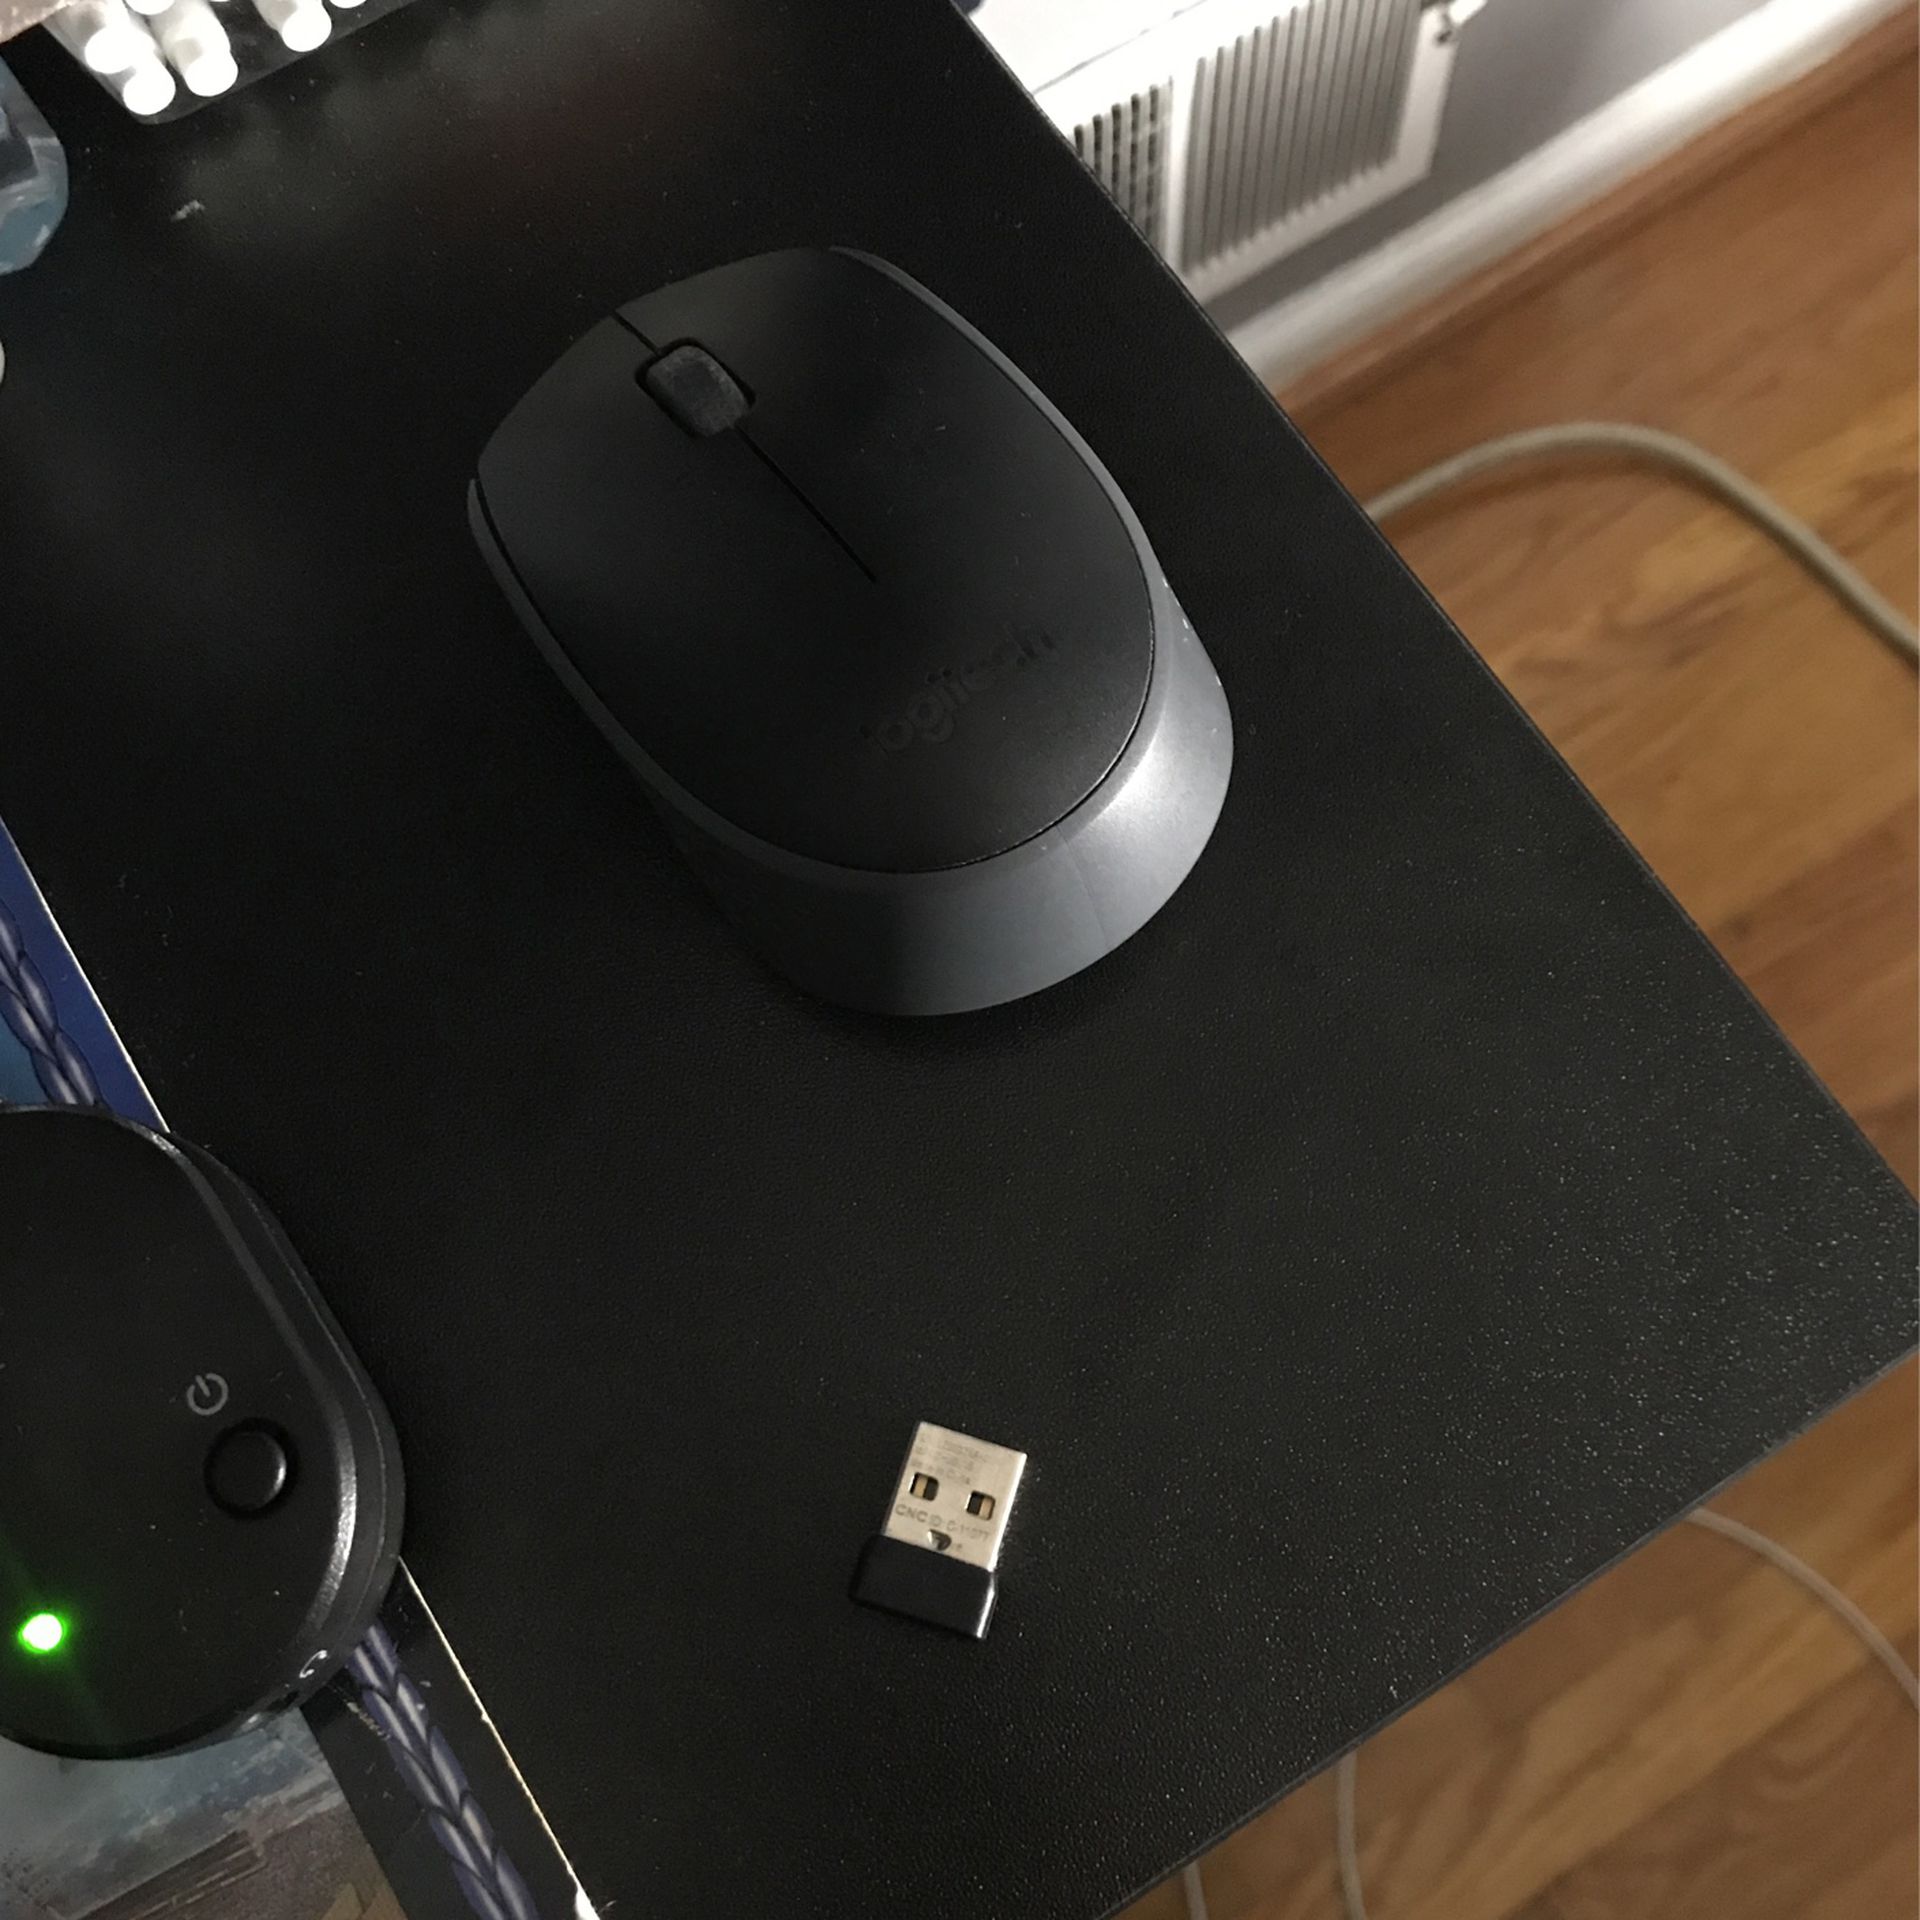 Logitech Computer Mouse